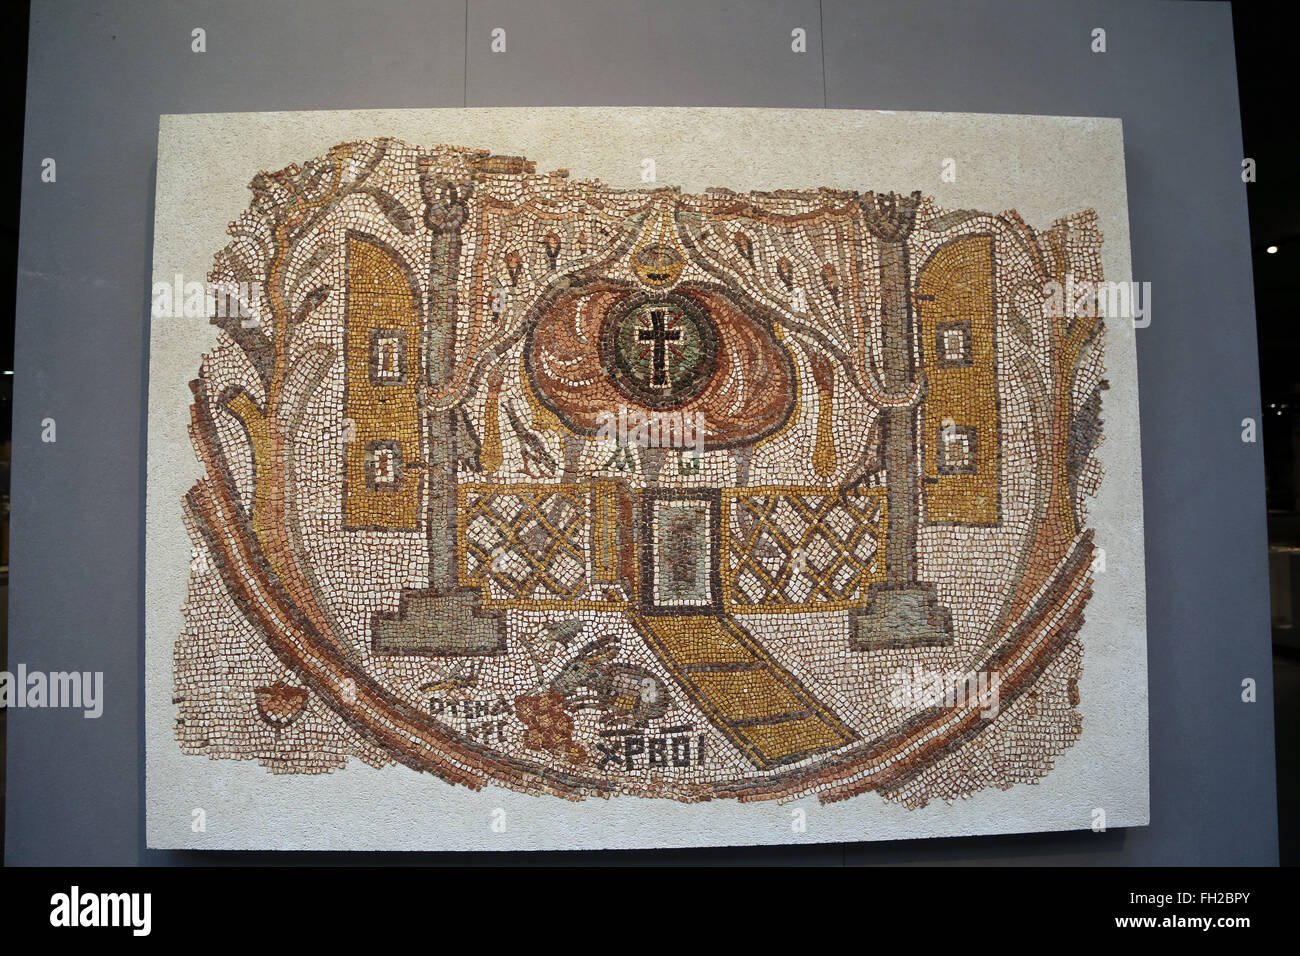 Römische Mosaik das Innere einer Kirche. Östlichen Mittelmeer, 5. Jahrhundert n. Chr.. Louvre-Museum. Paris. Frankreich. Stockfoto